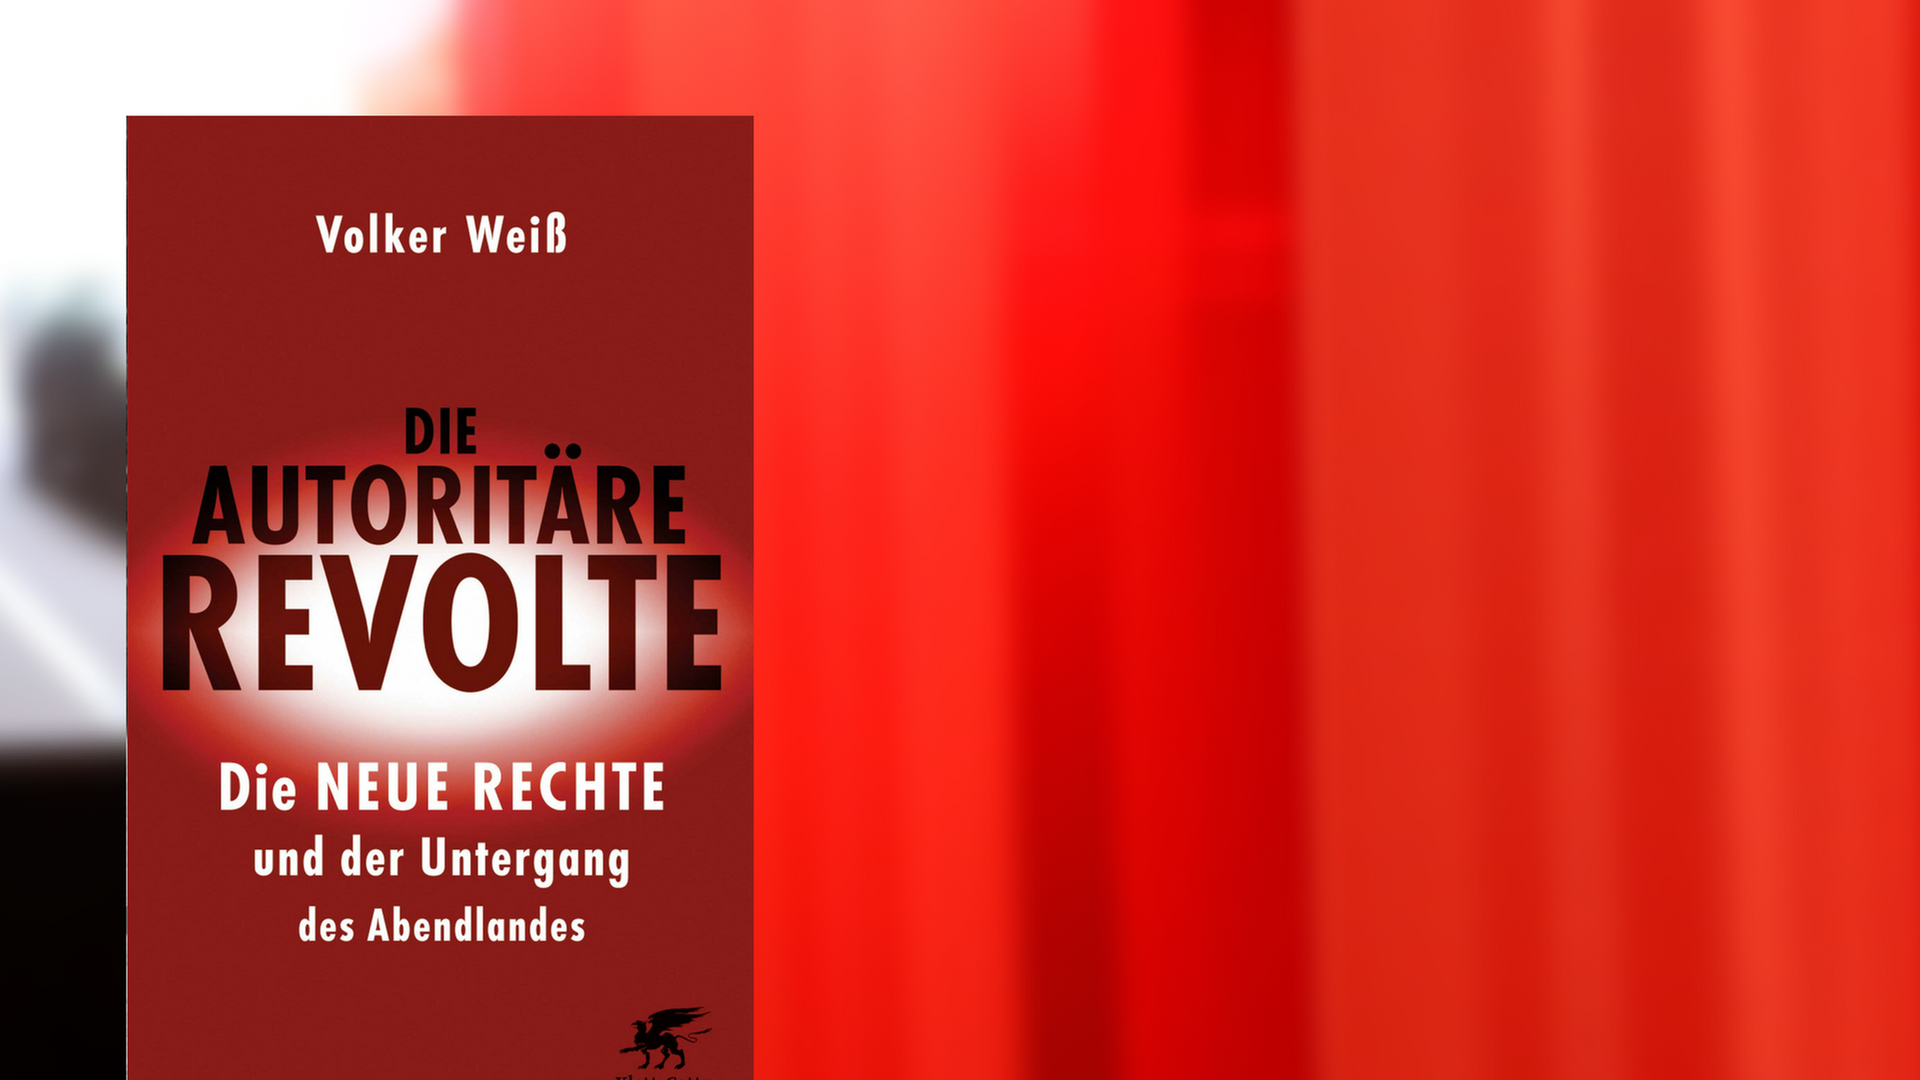 Volker Weiß: Die autoritäre Revolte